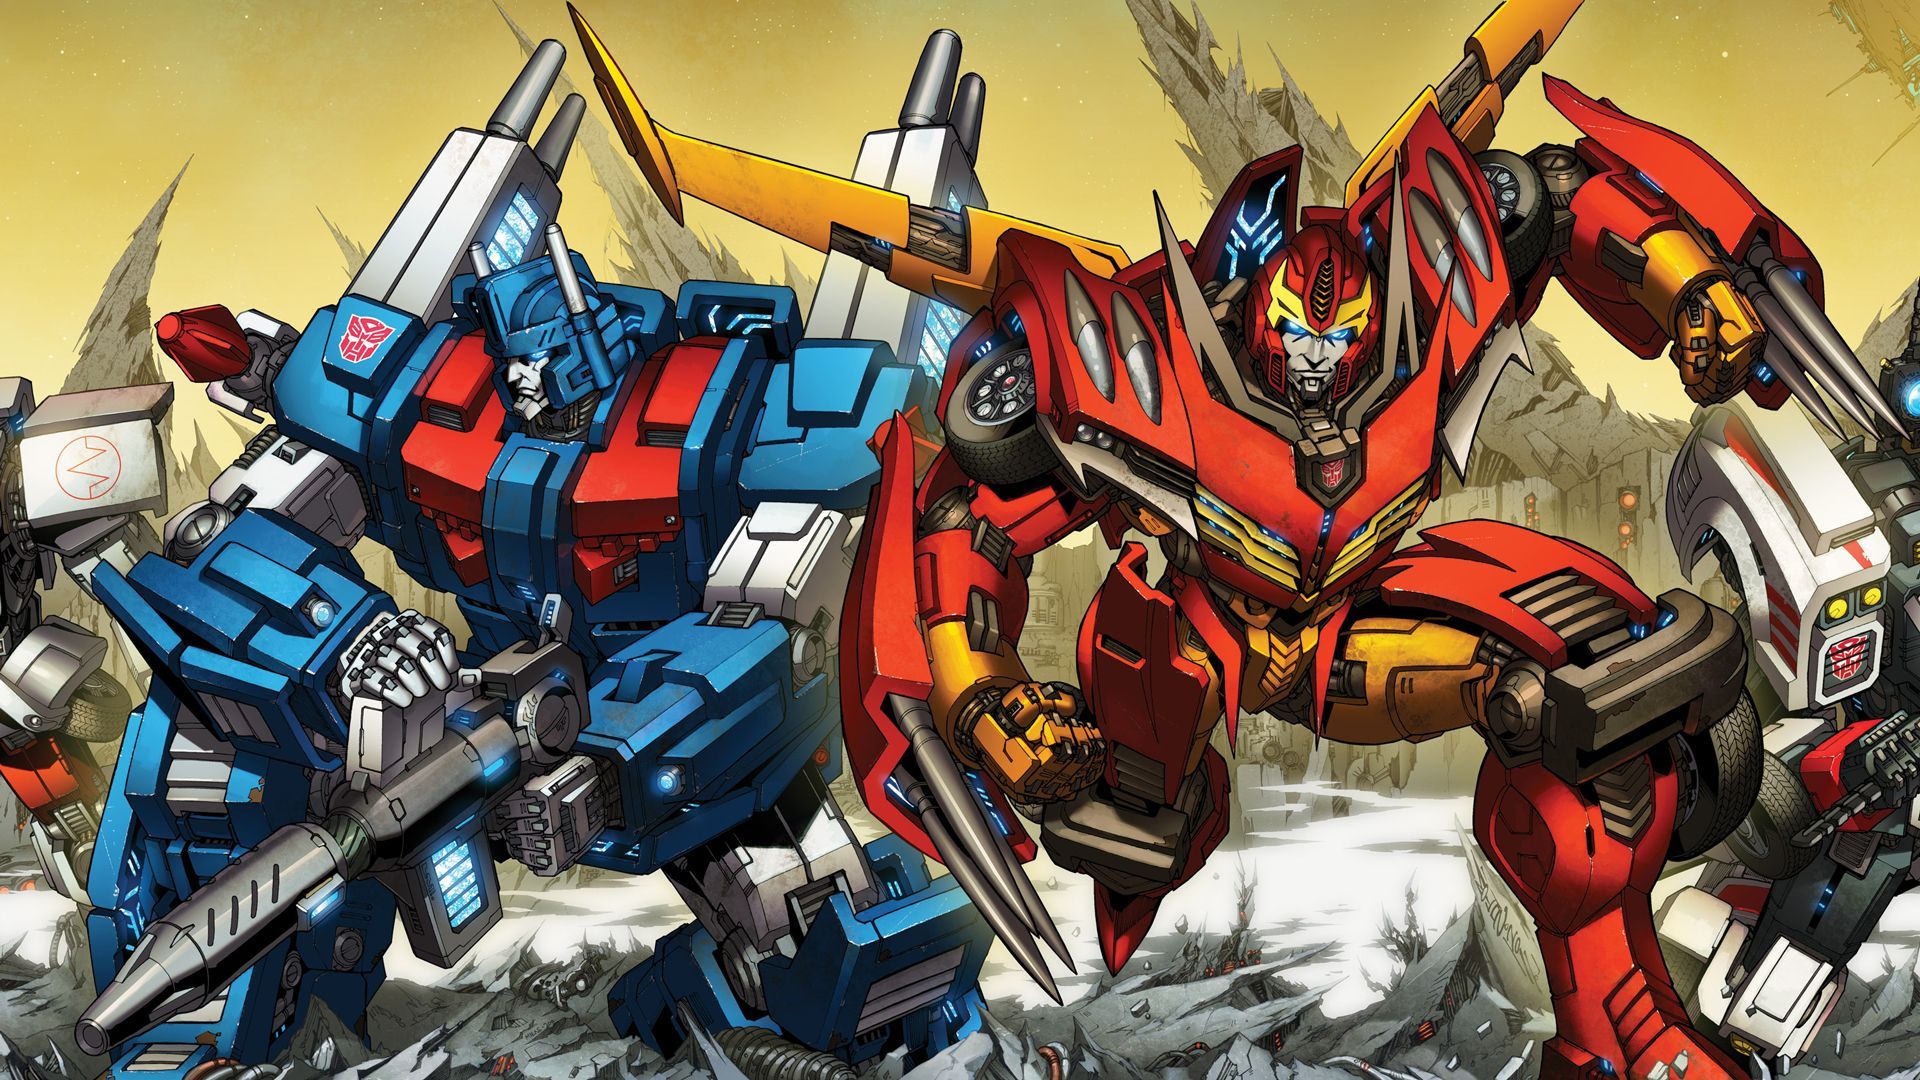 Transformers Wallpaper | 2048x1536 | ID:42755